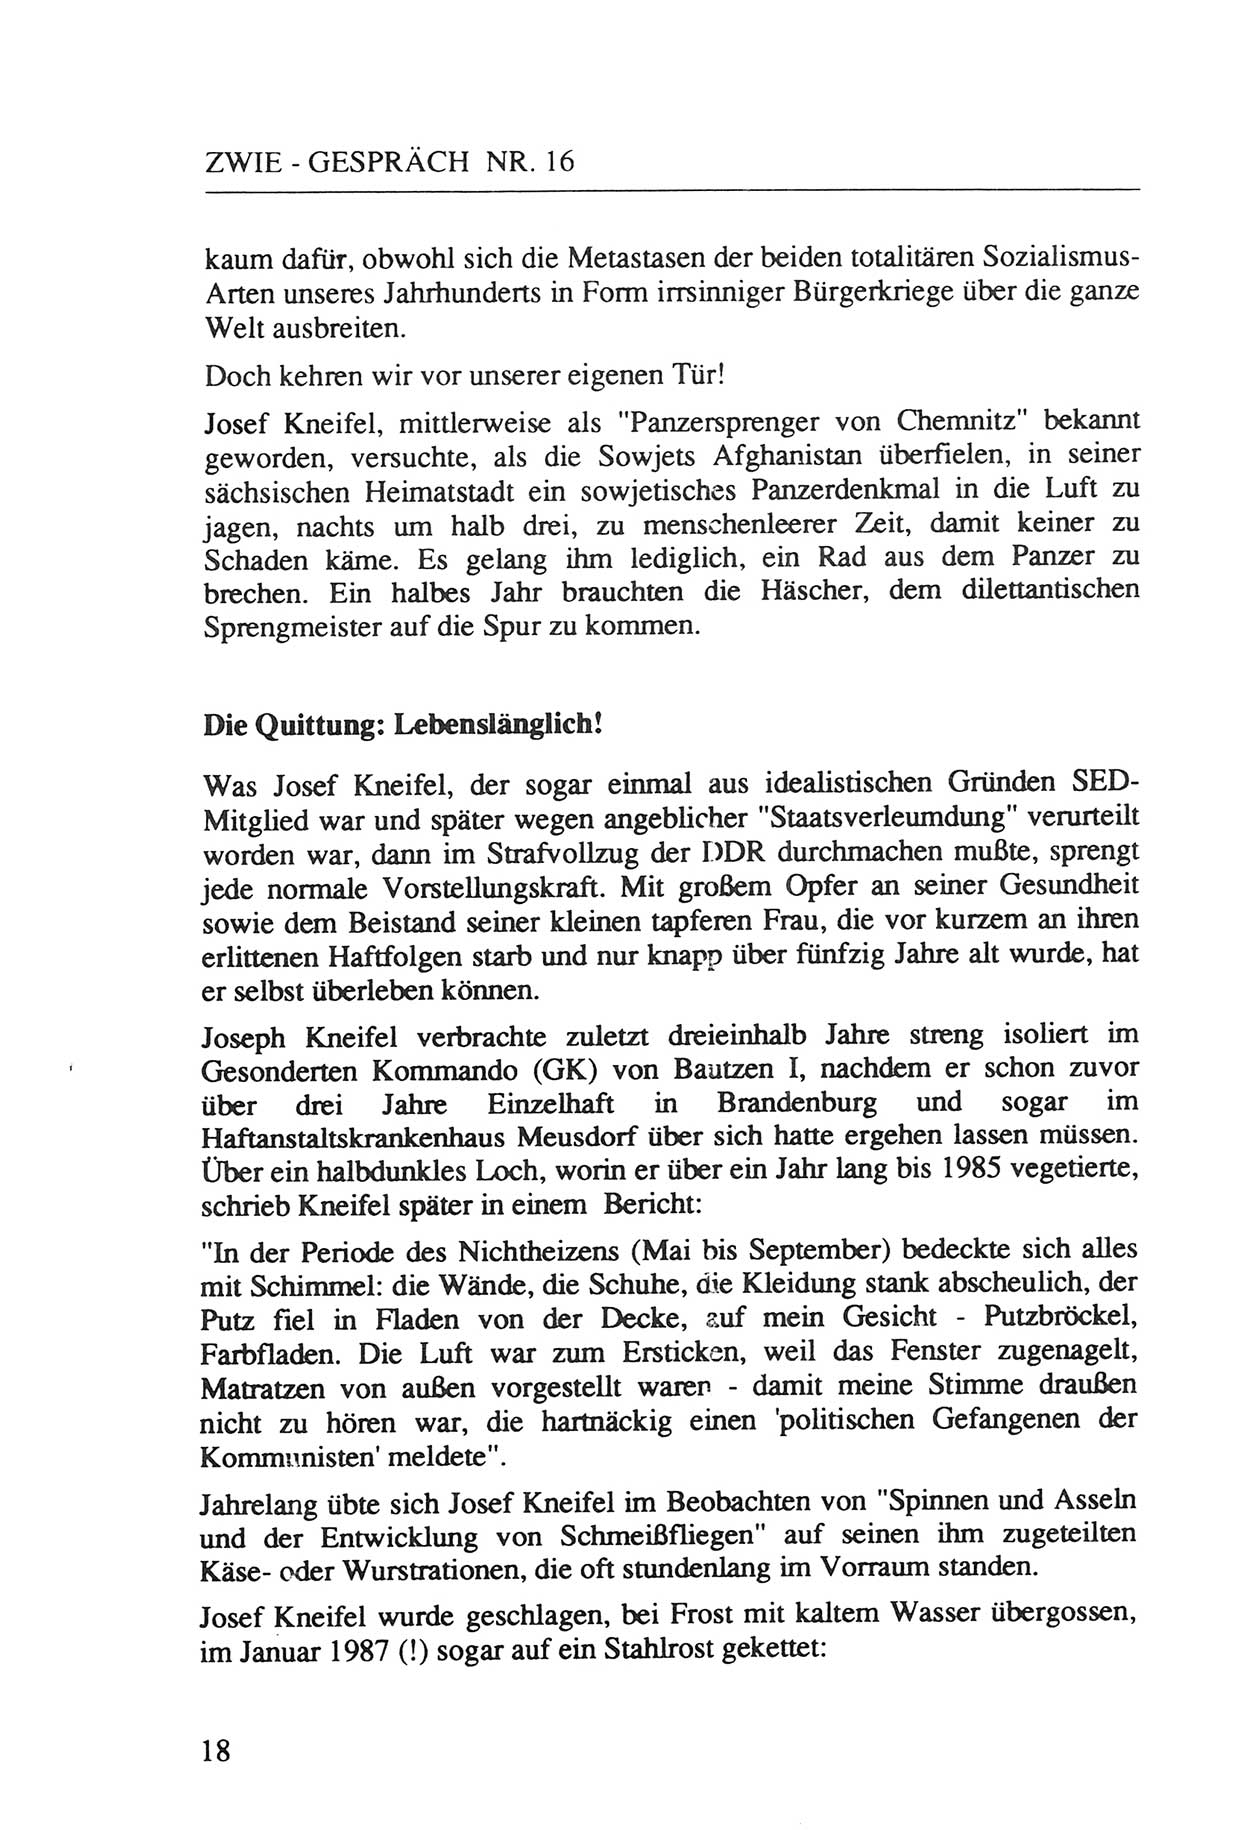 Zwie-Gespräch, Beiträge zur Aufarbeitung der Staatssicherheits-Vergangenheit [Deutsche Demokratische Republik (DDR)], Ausgabe Nr. 16, Berlin 1993, Seite 18 (Zwie-Gespr. Ausg. 16 1993, S. 18)